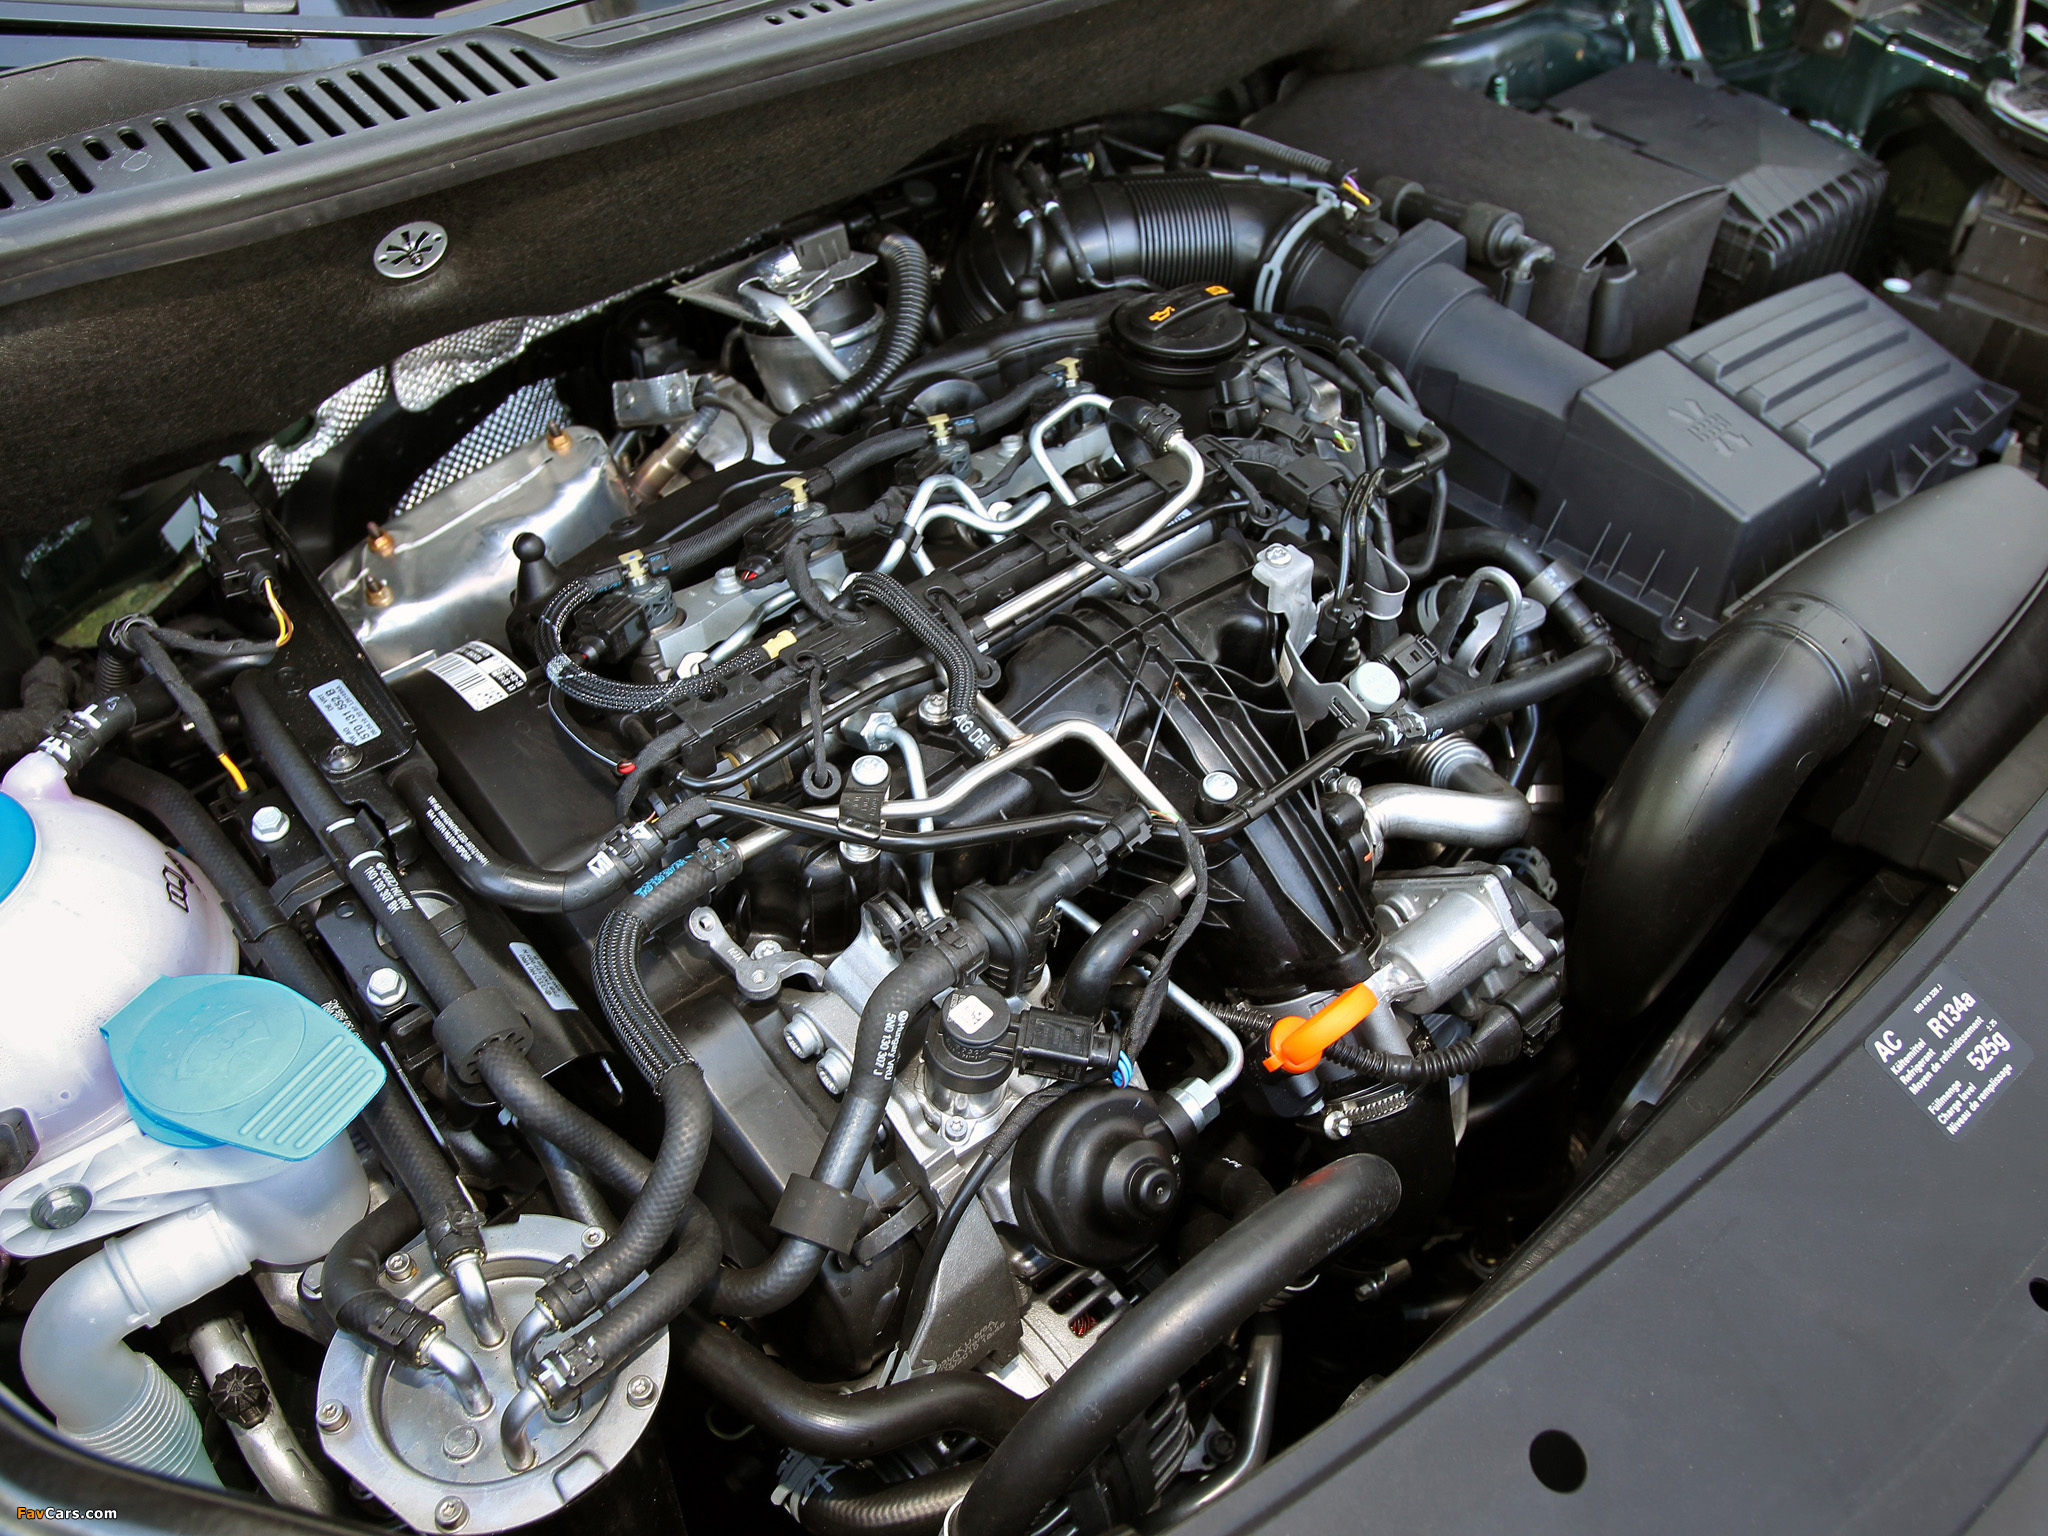 Дизель 140 л с фольксваген. 2.0 TDI VW Caddy под капотом. Мотор Тигуан дизель 2.0 TDI. Моторный отсек Тигуан 2.0 TDI. Volkswagen Caddy 1.2 мотор.